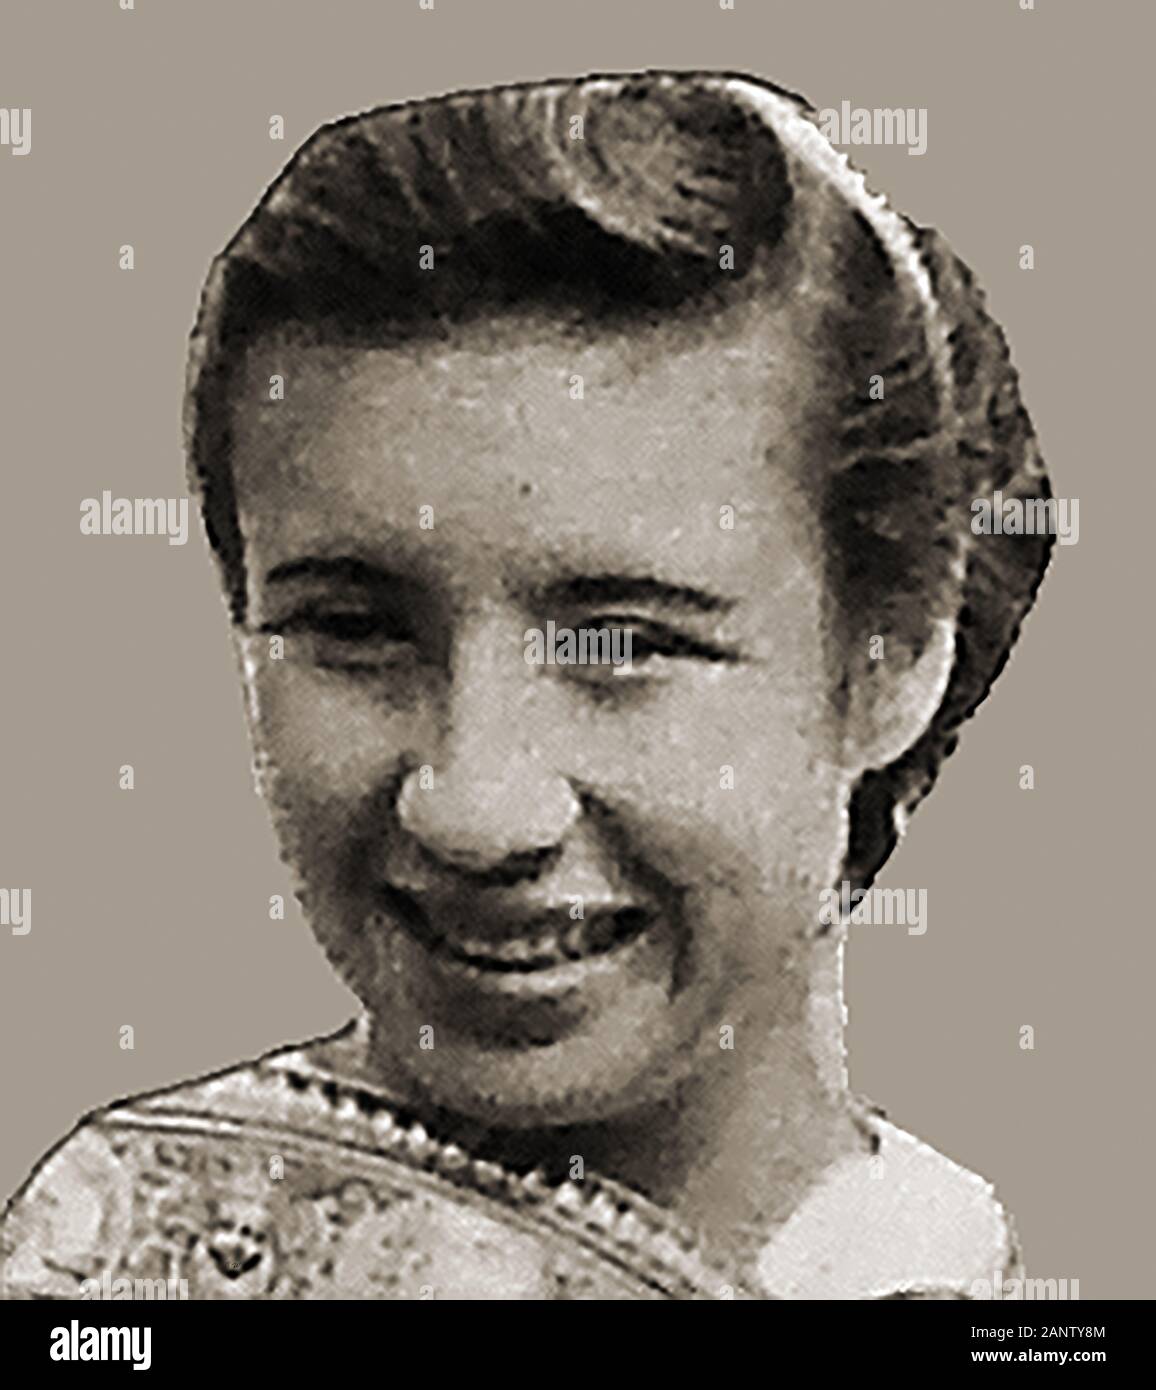 Eine frühe Pressefoto Portrait von Wimbledon Champion tennis player wenig Mo (Maureen Connoly) - Maureen Catherine Connolly-Brinker (geb. Connolly) 1934-1969 war ein US-amerikanischer Tennisspieler, war der Sieger von neun Grand Slam Titel singles in den frühen 1950er Jahren Stockfoto